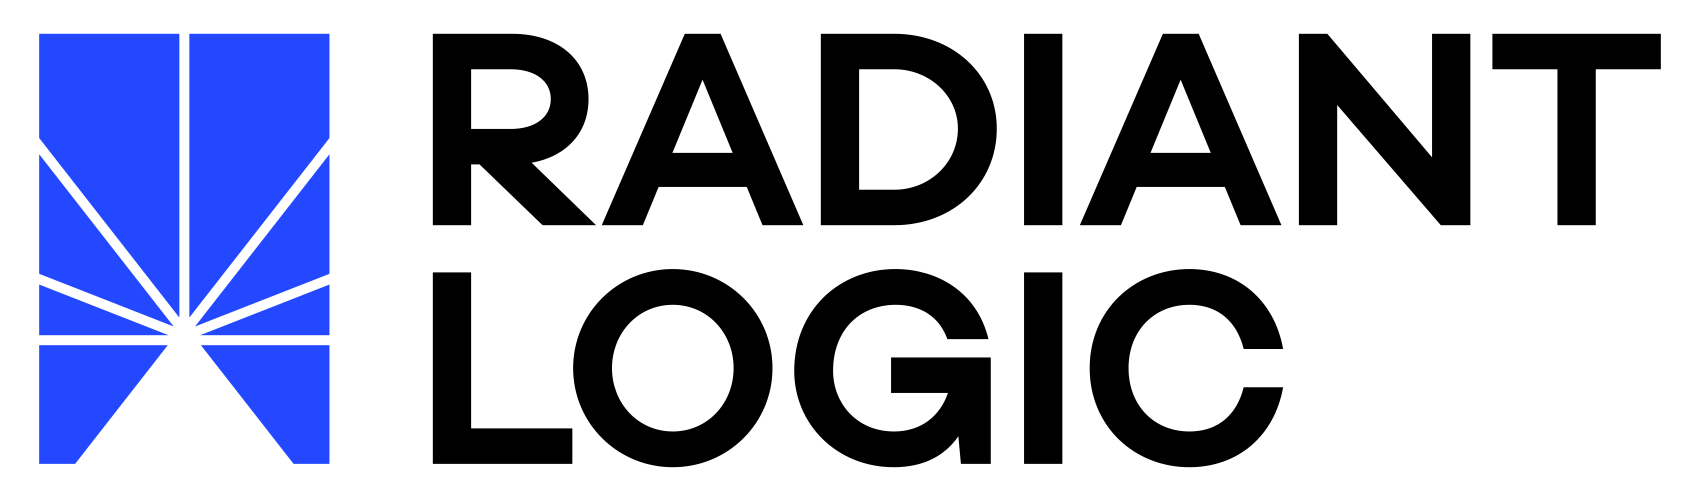 Radiant_Logic_Logo.jpg